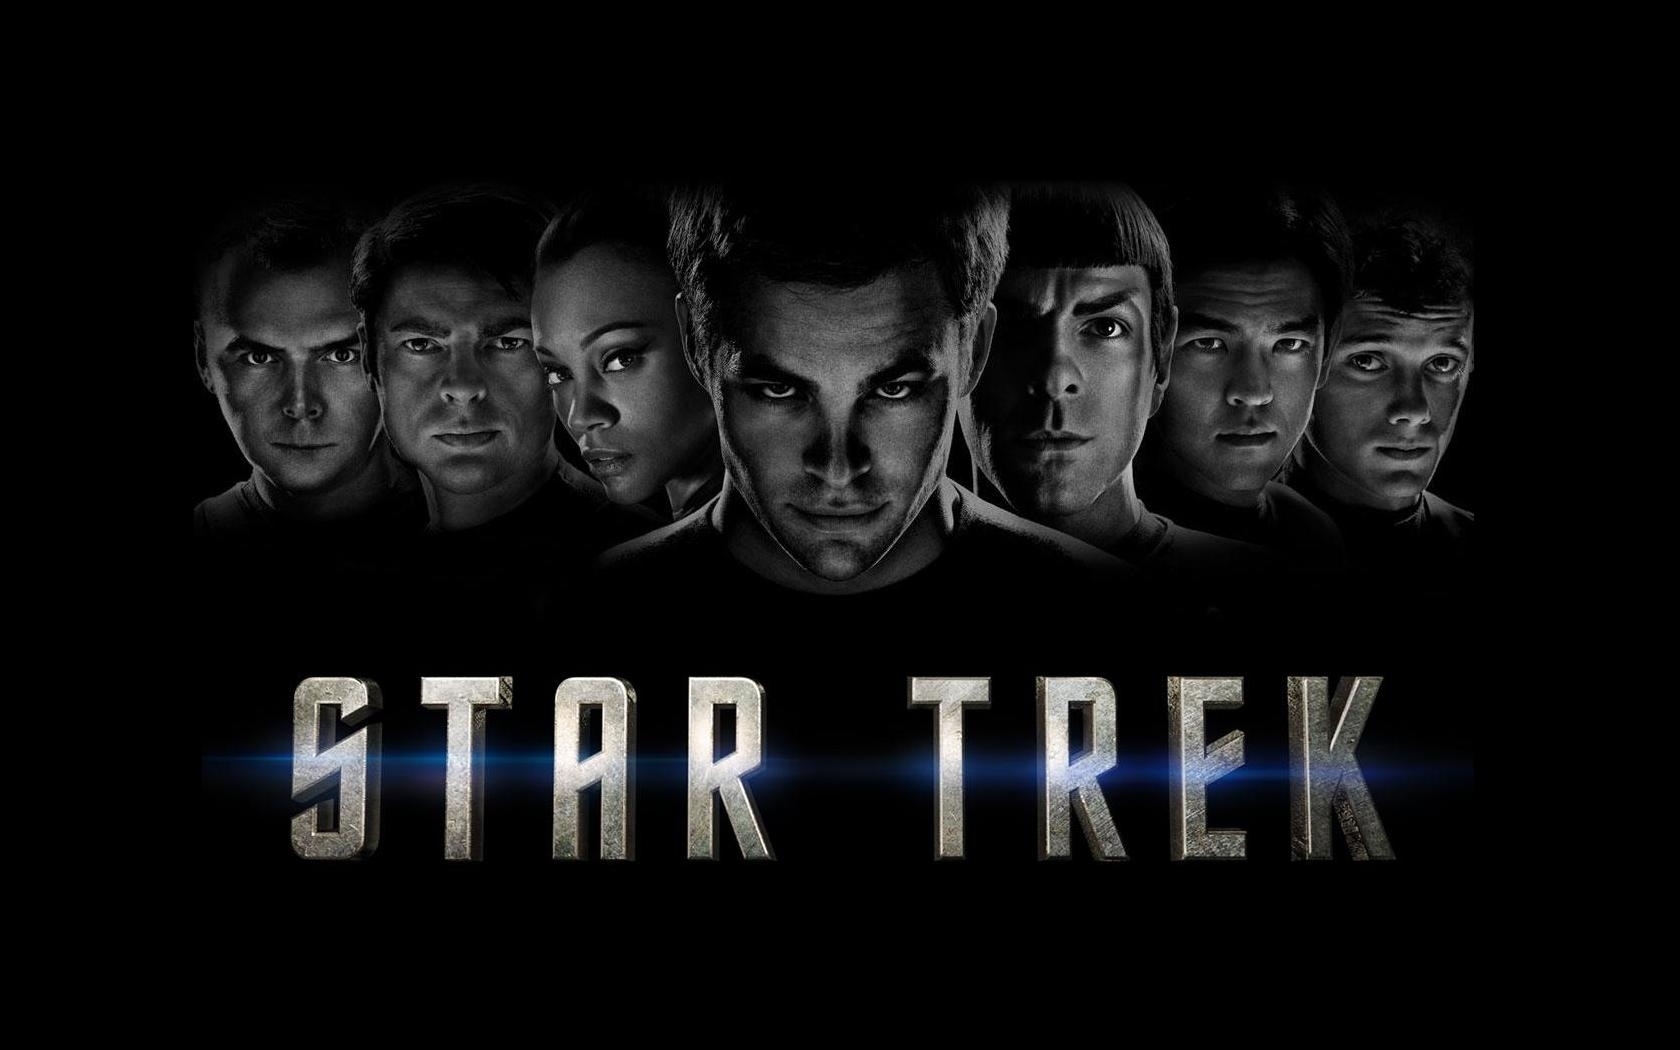 Популярные заставки и фоны Звездный Путь (Star Trek) на компьютер